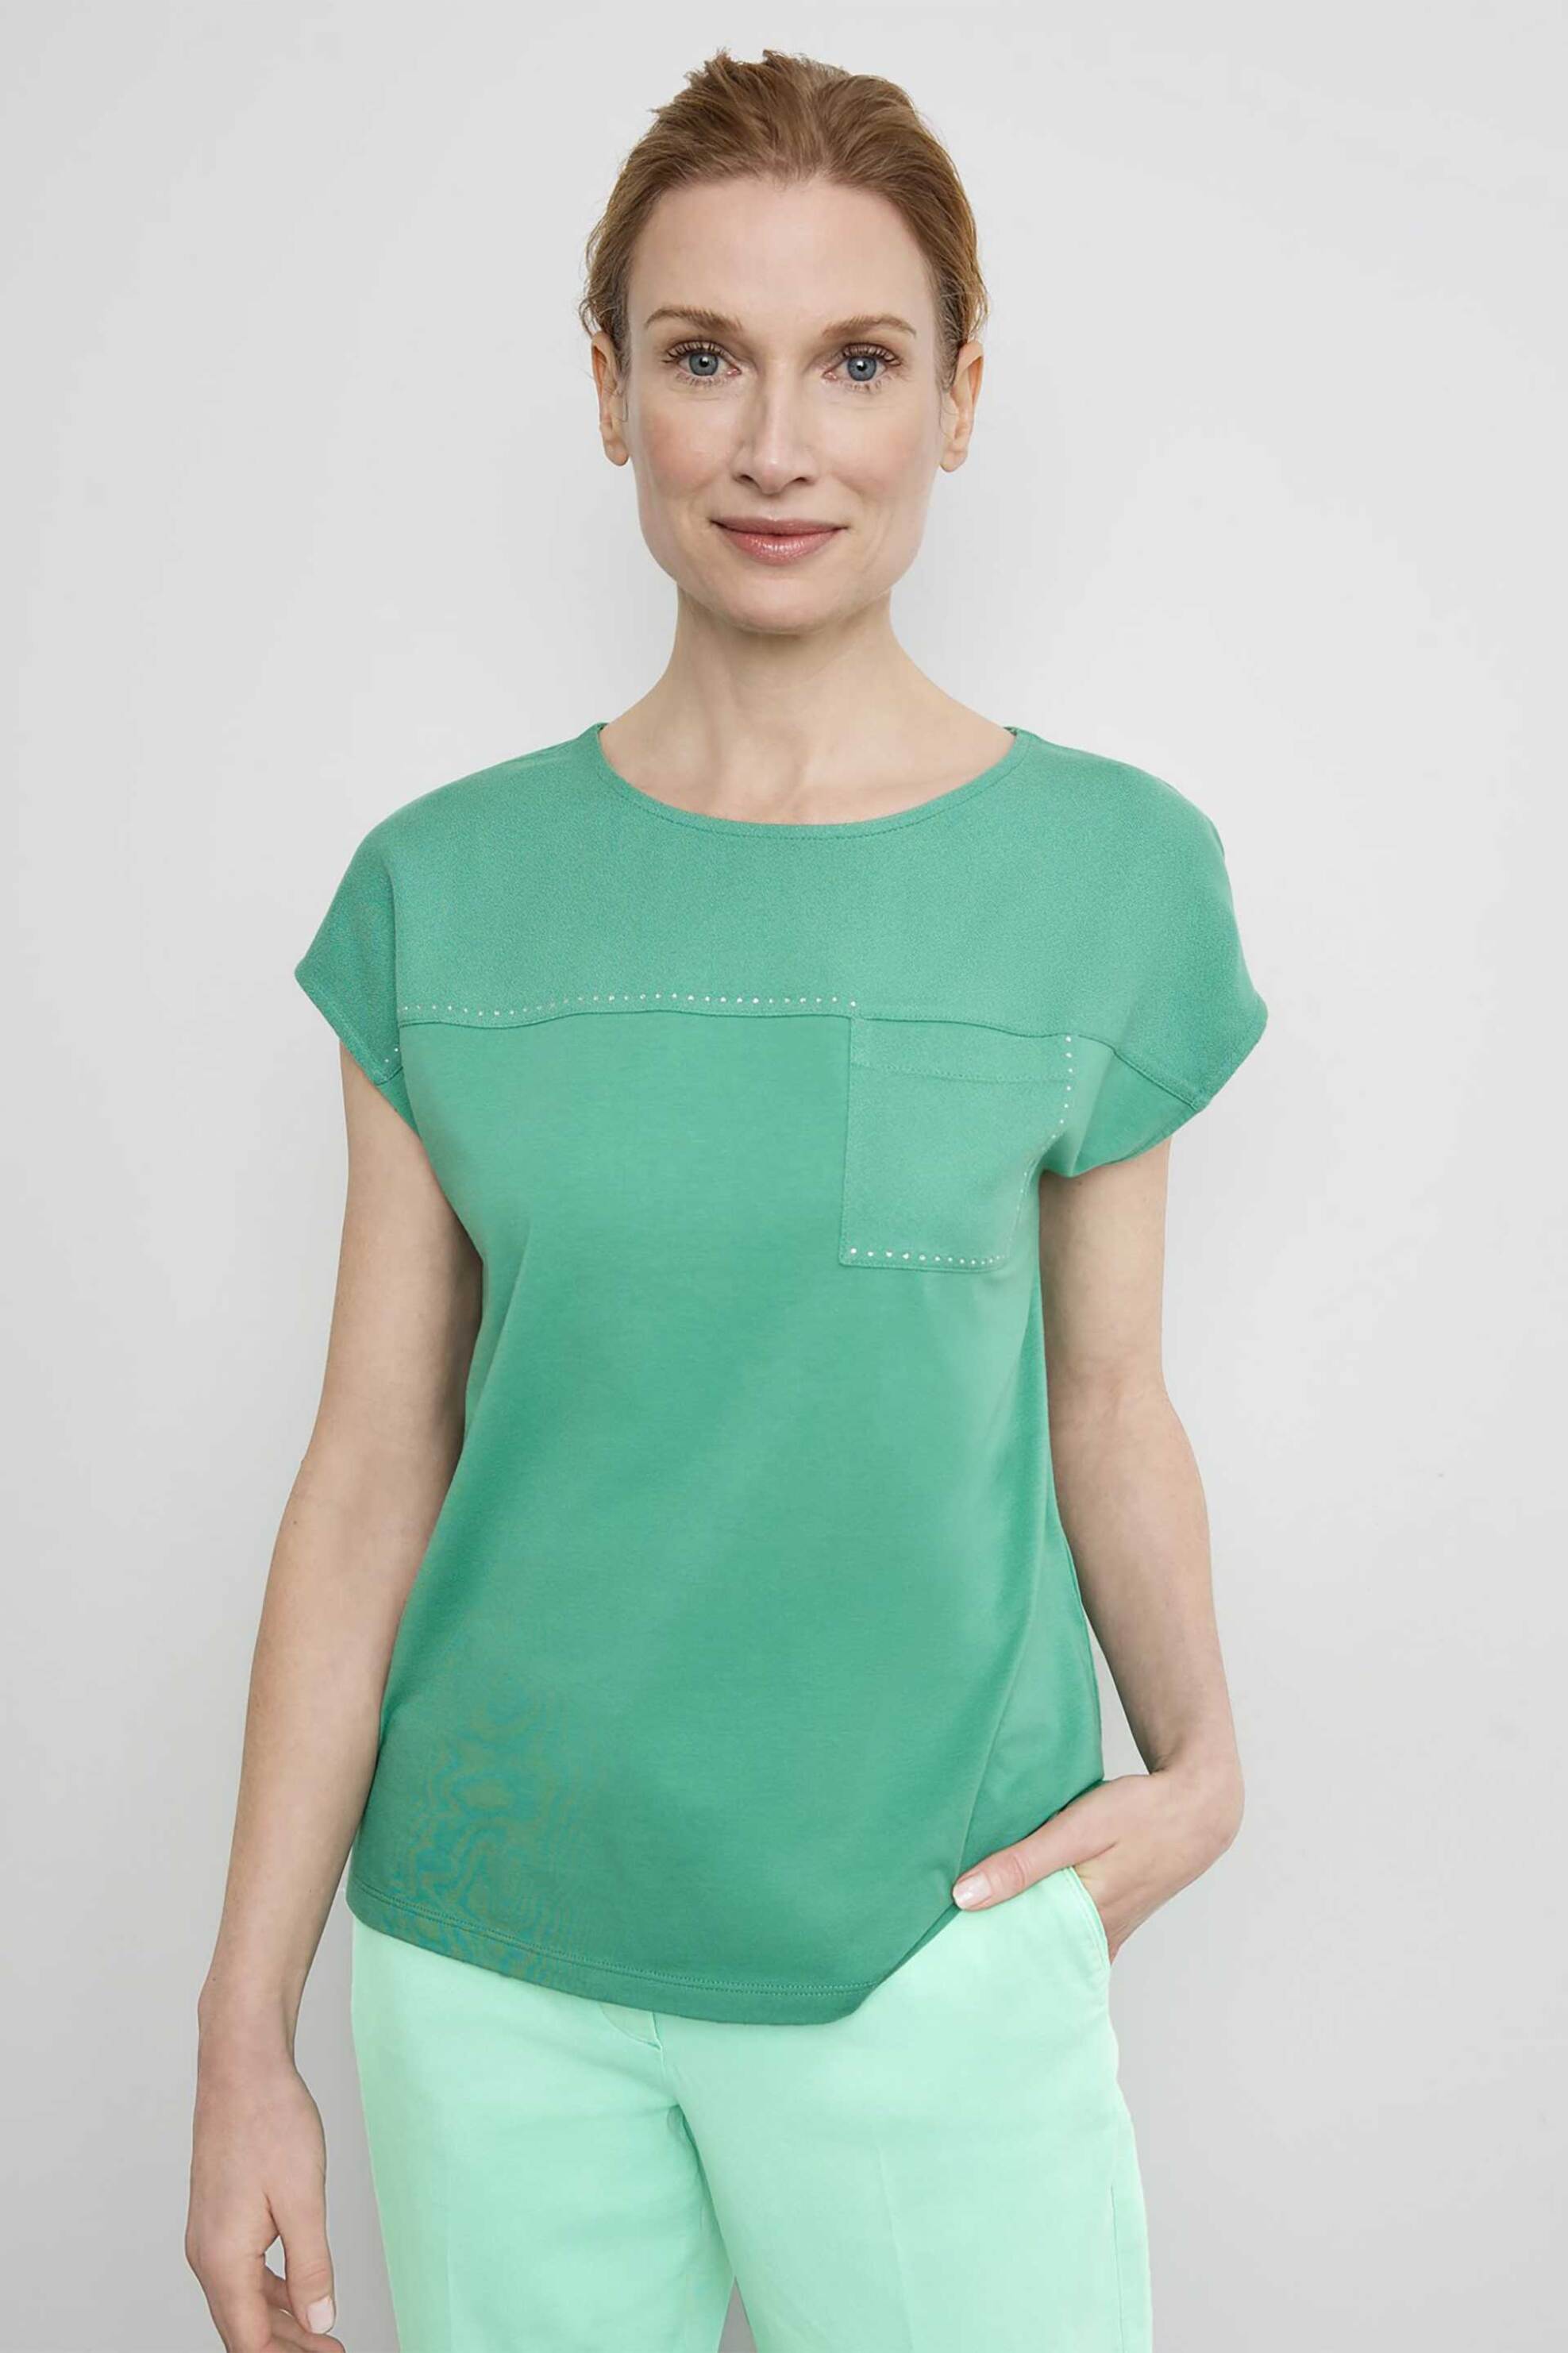 Γυναικεία Ρούχα & Αξεσουάρ > Γυναικεία Ρούχα > Γυναικεία Τοπ > Γυναικεία T-Shirts Gerry Weber γυναικείο T-shirt με τσέπη και διακοσμητικές πέτρες Casual Fit - 270043-44042 Πράσινο